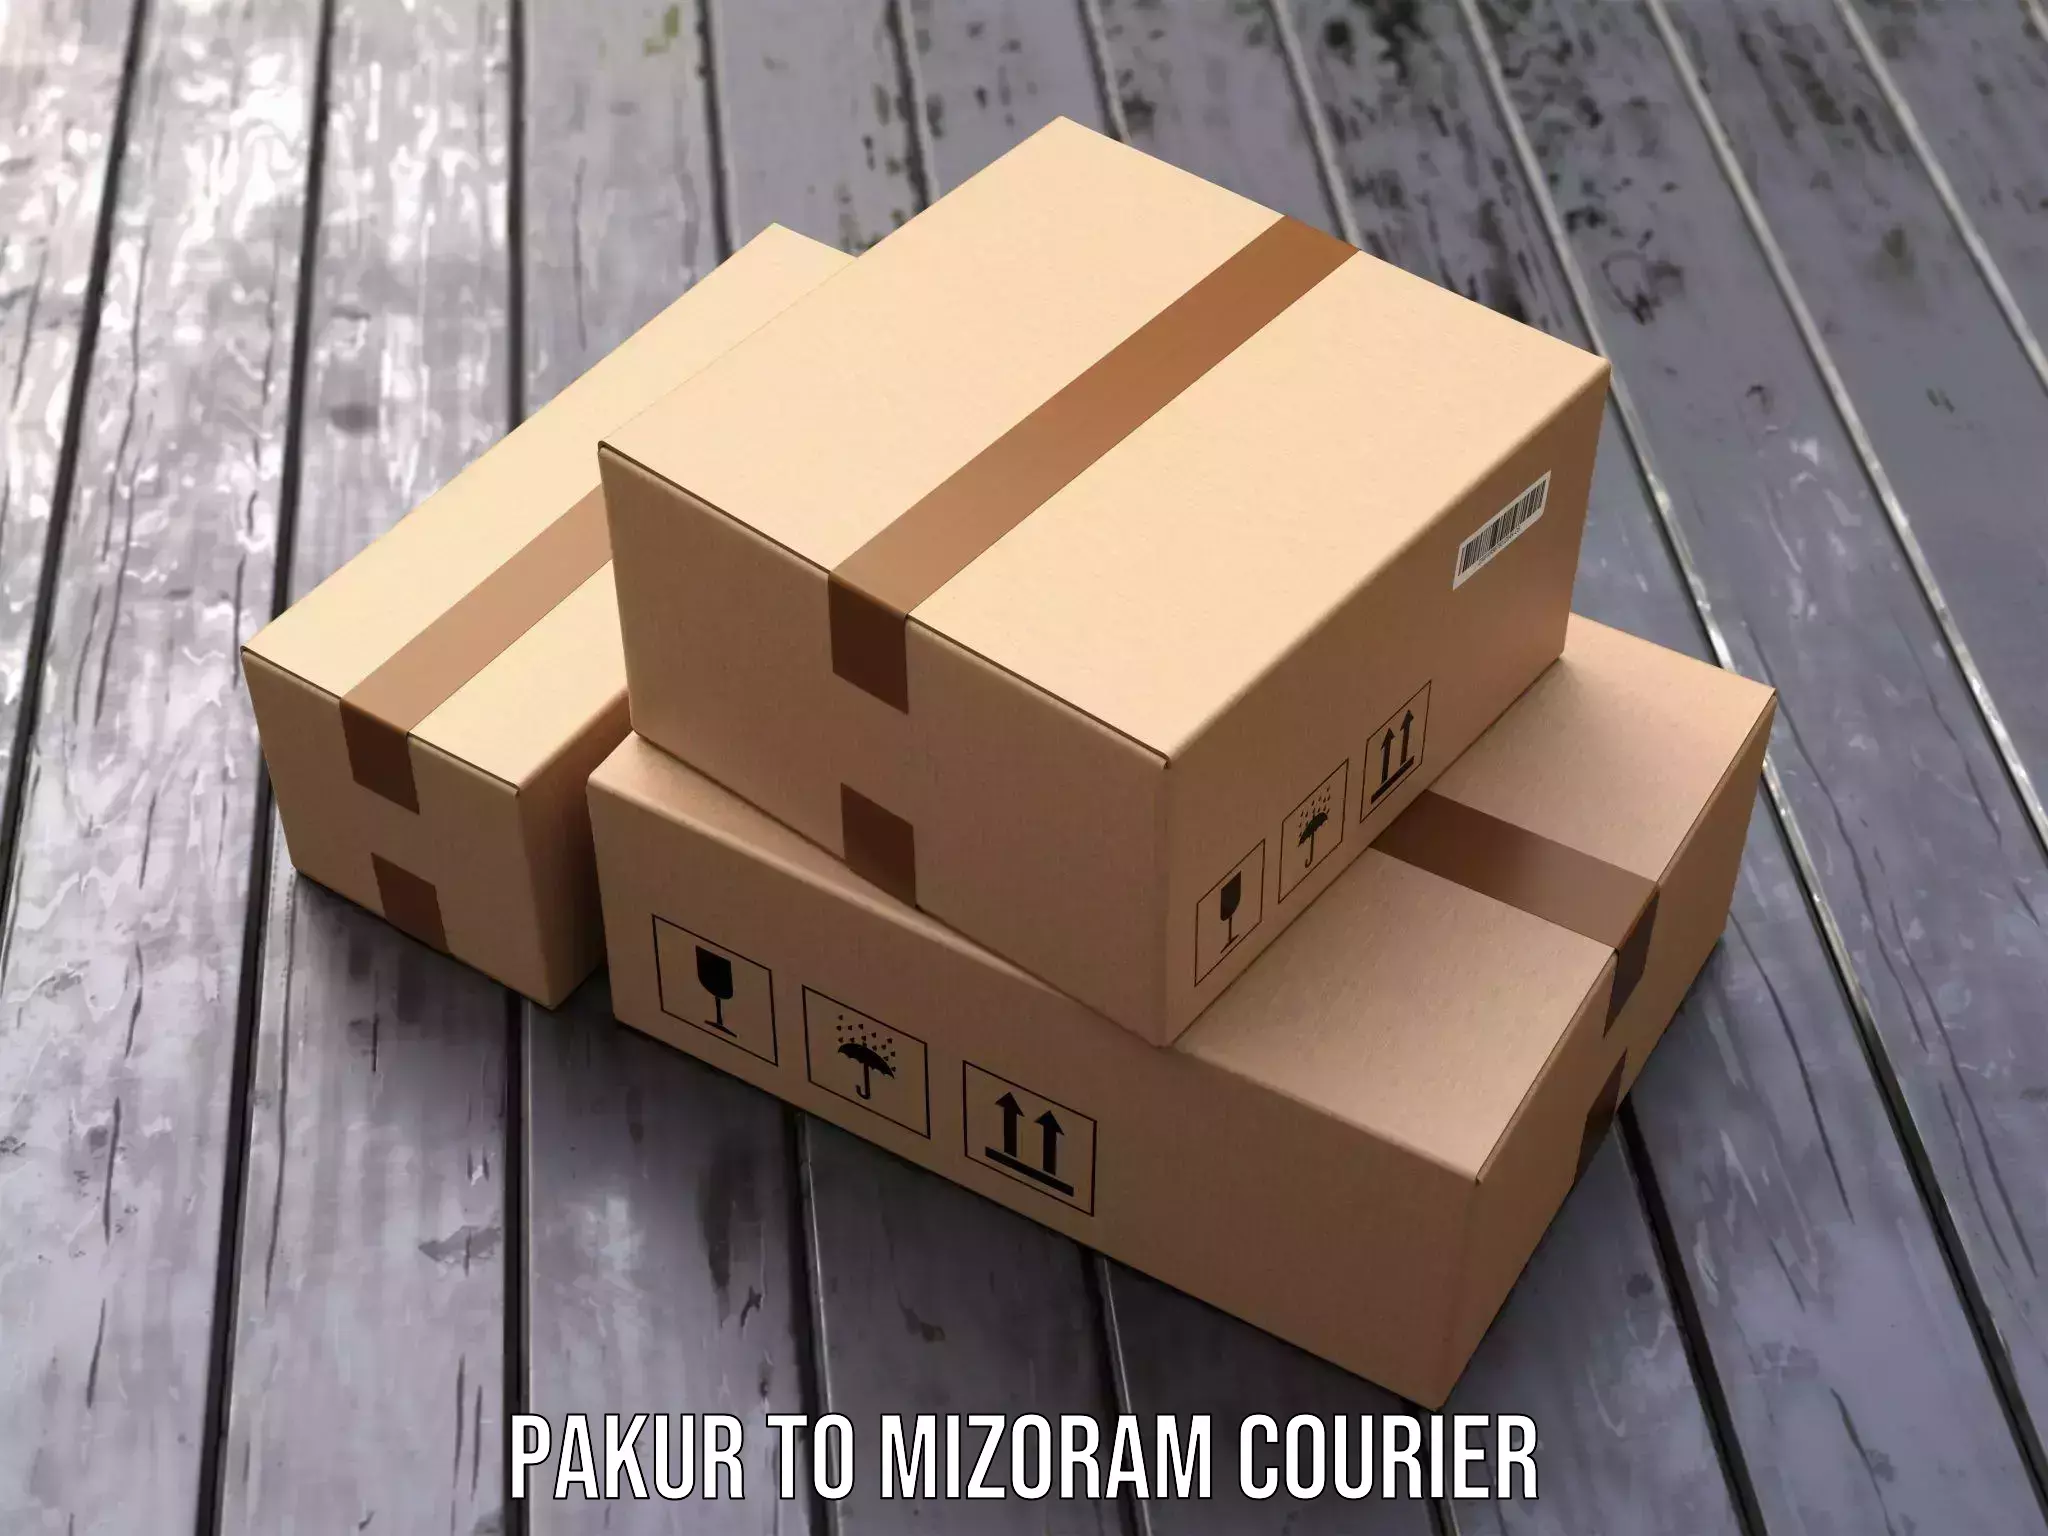 Reliable parcel services Pakur to Mizoram